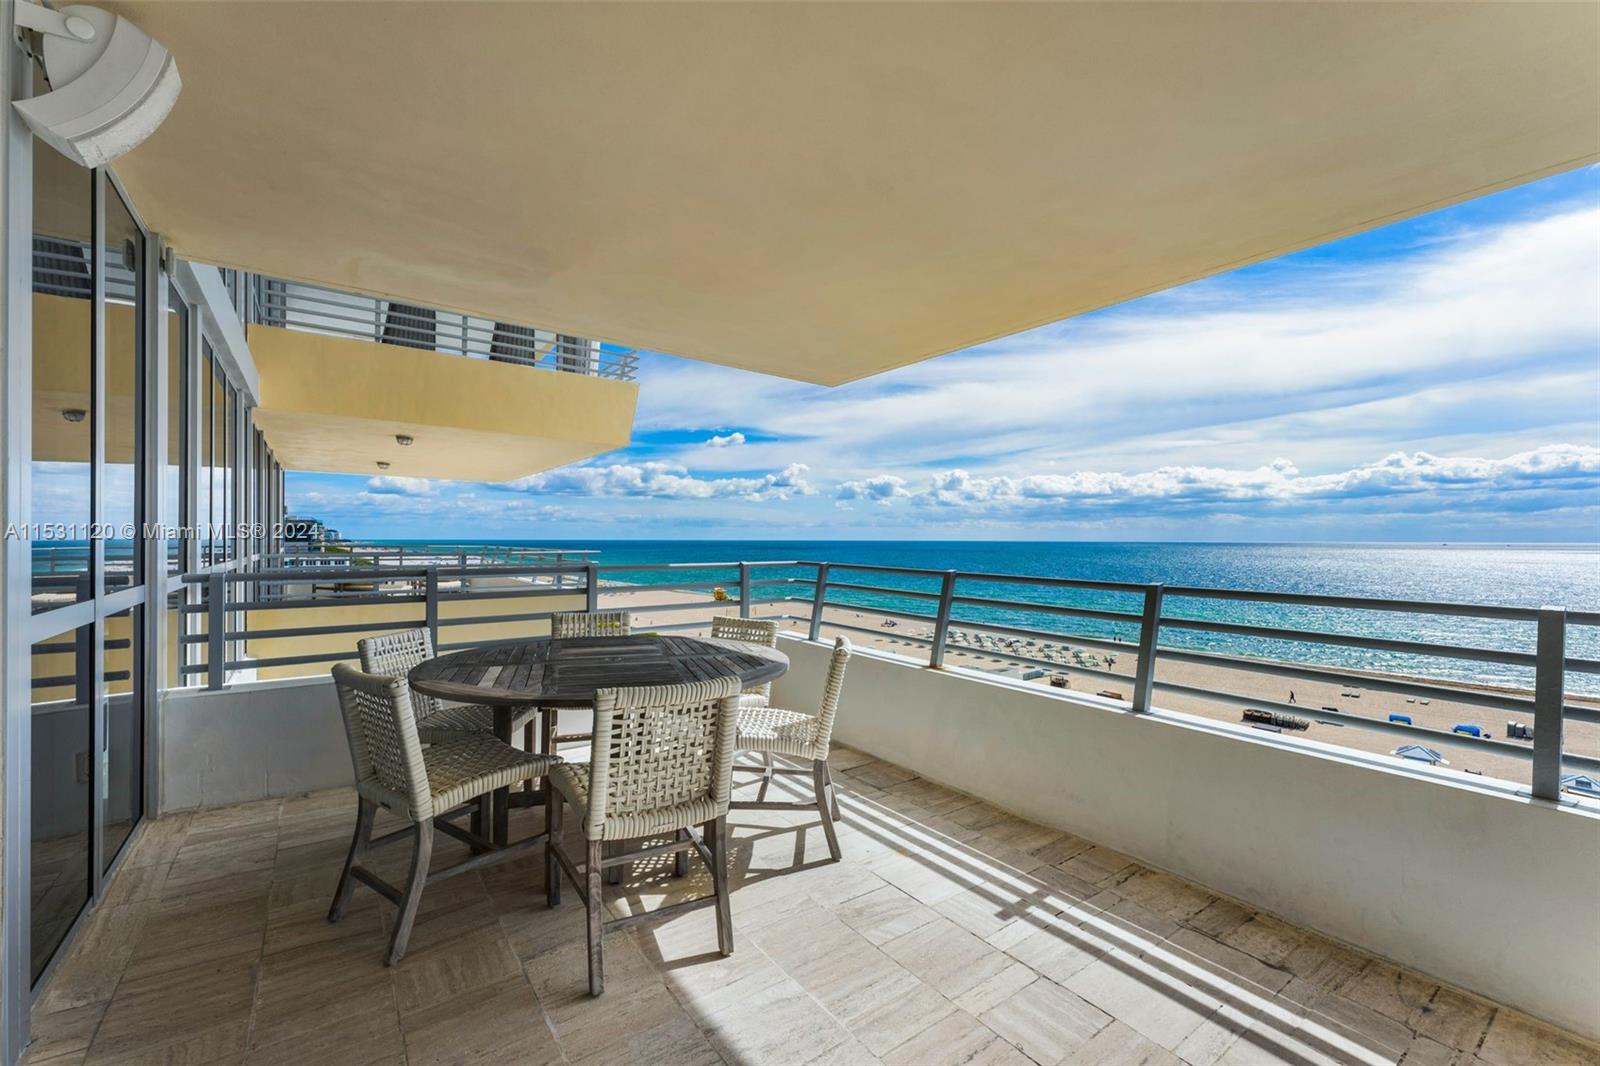 Condo for Rent in Miami Beach, FL